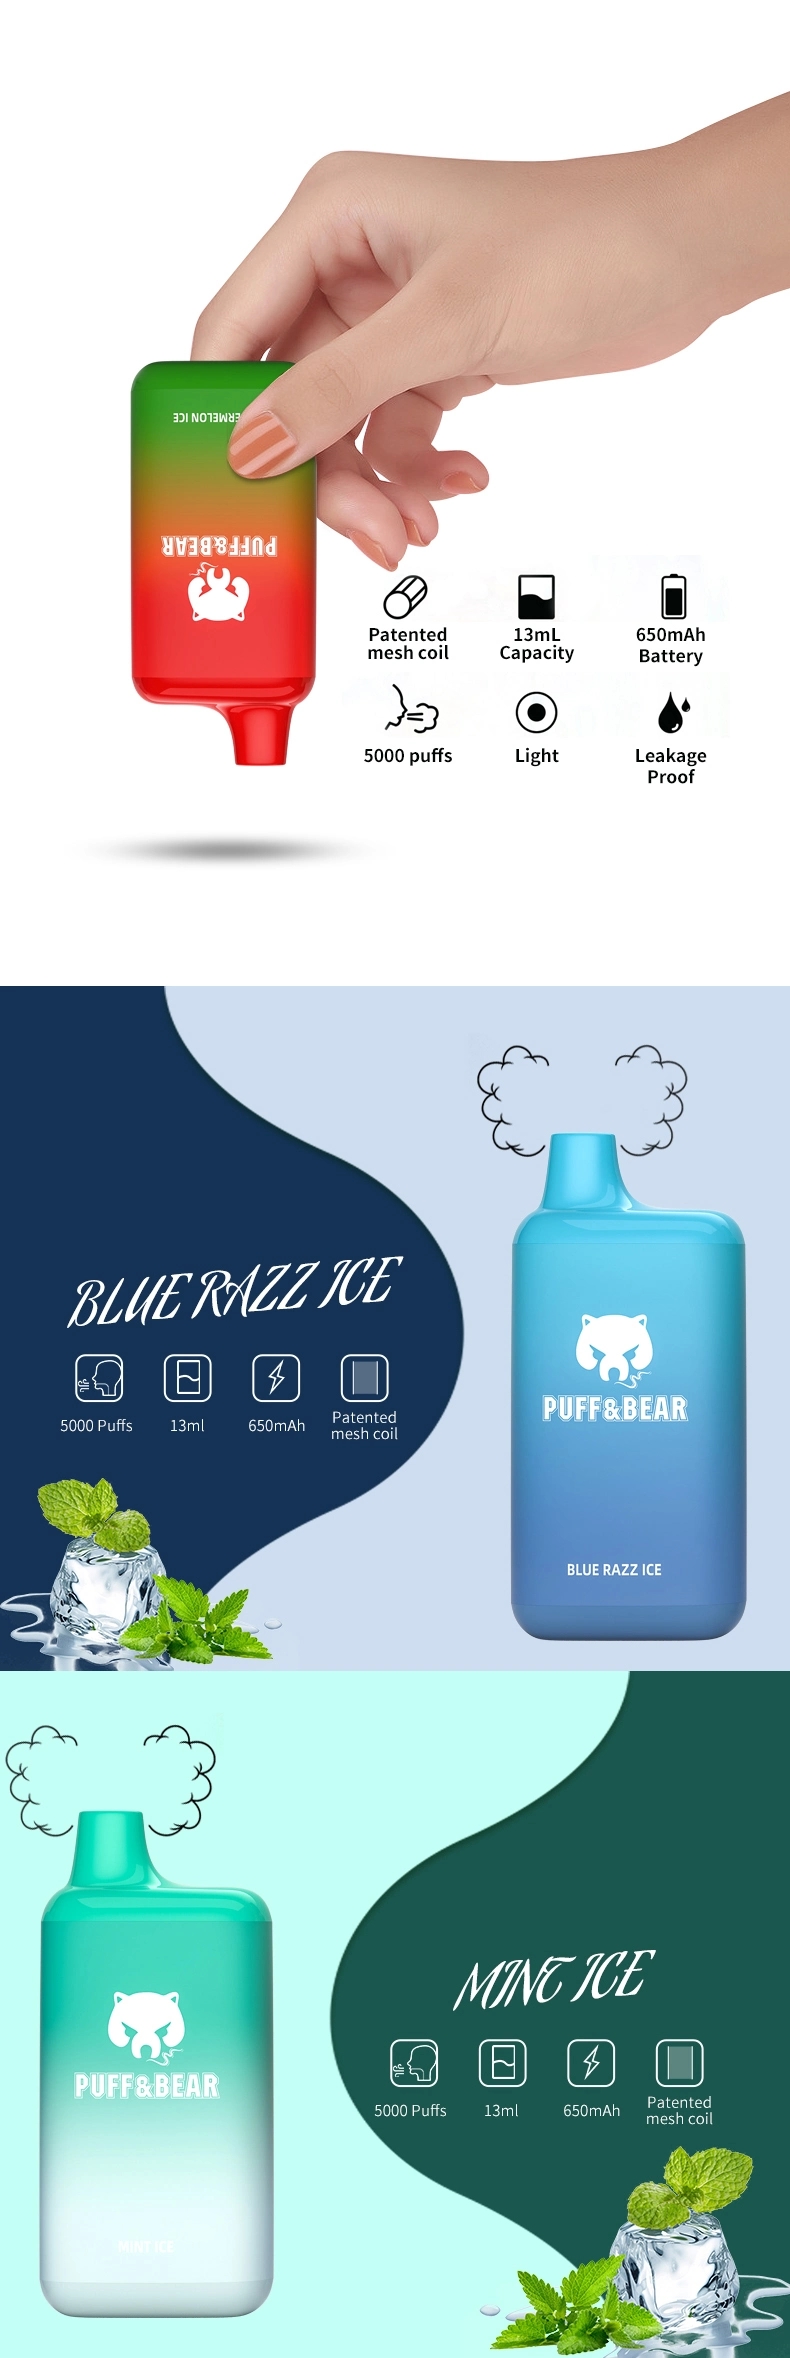 China-Shenzhen-Vape-E-Cigarette-Puffandbear-New-Vaporizer-Pen-Puff-Bar-5000-Puffs-Fruit-Juice-Flavor-Disposable-Vape.webp (9)